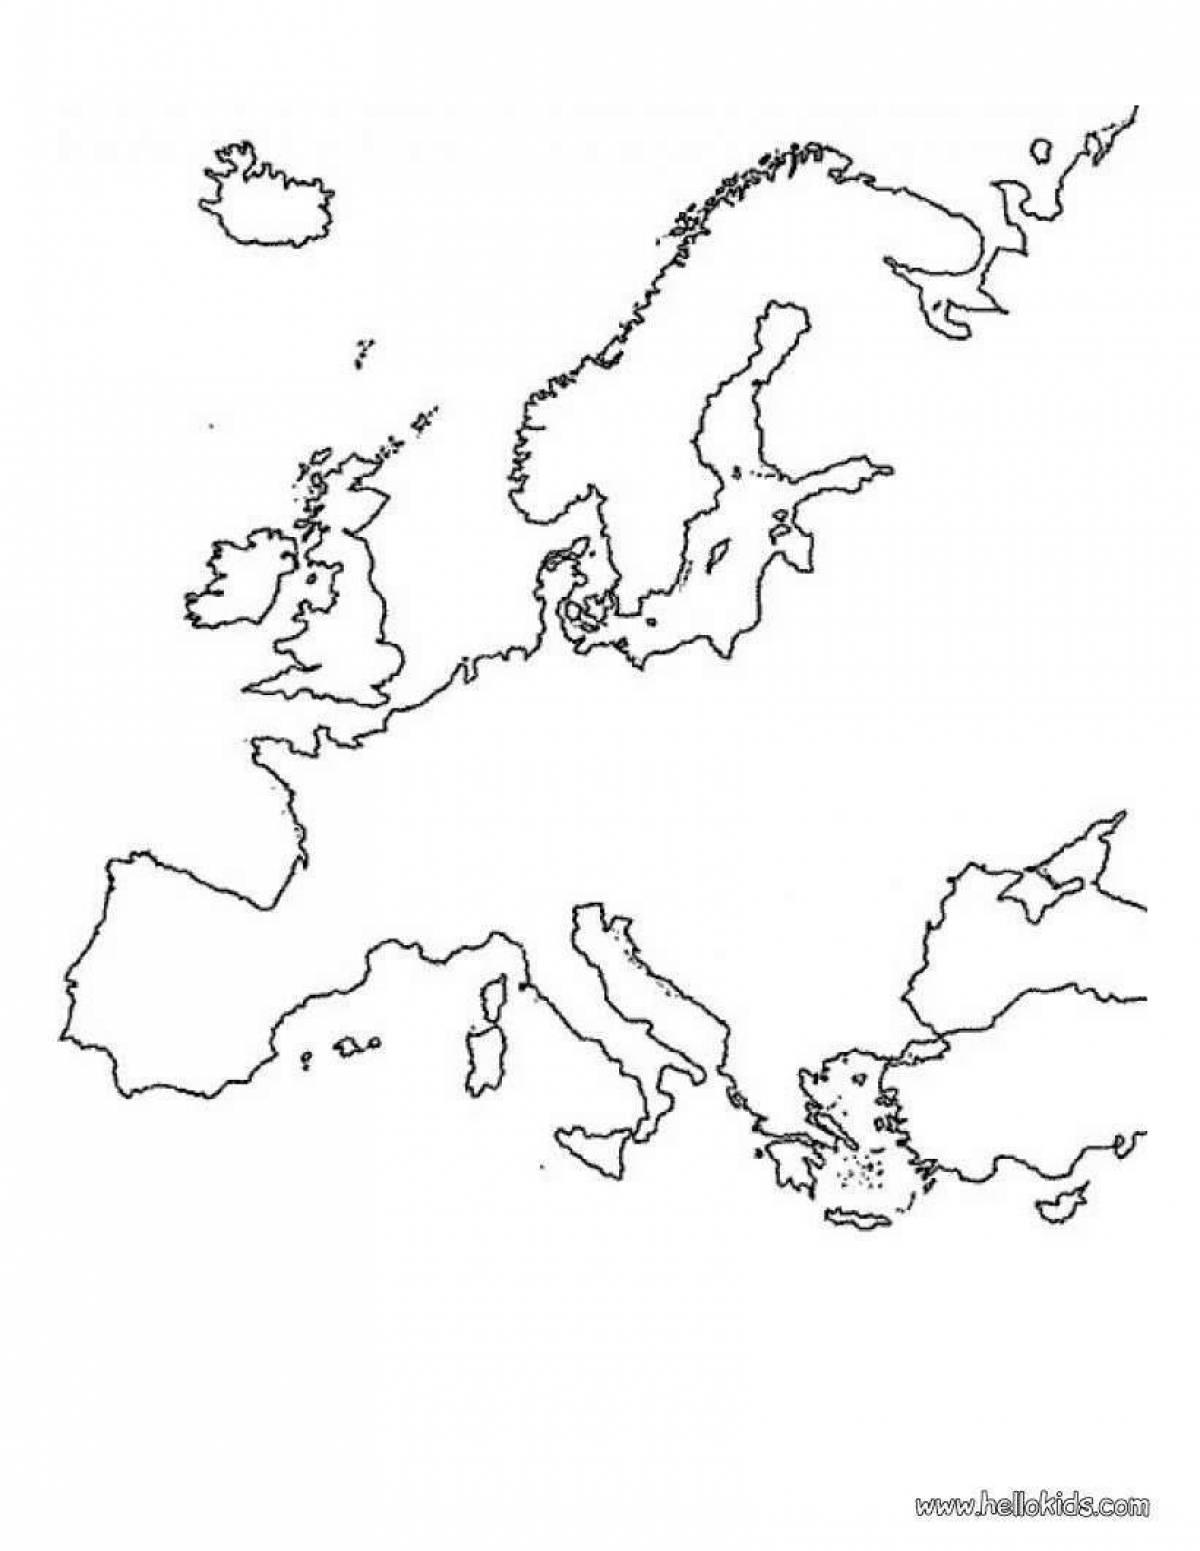 Контурная карта Европы без границ